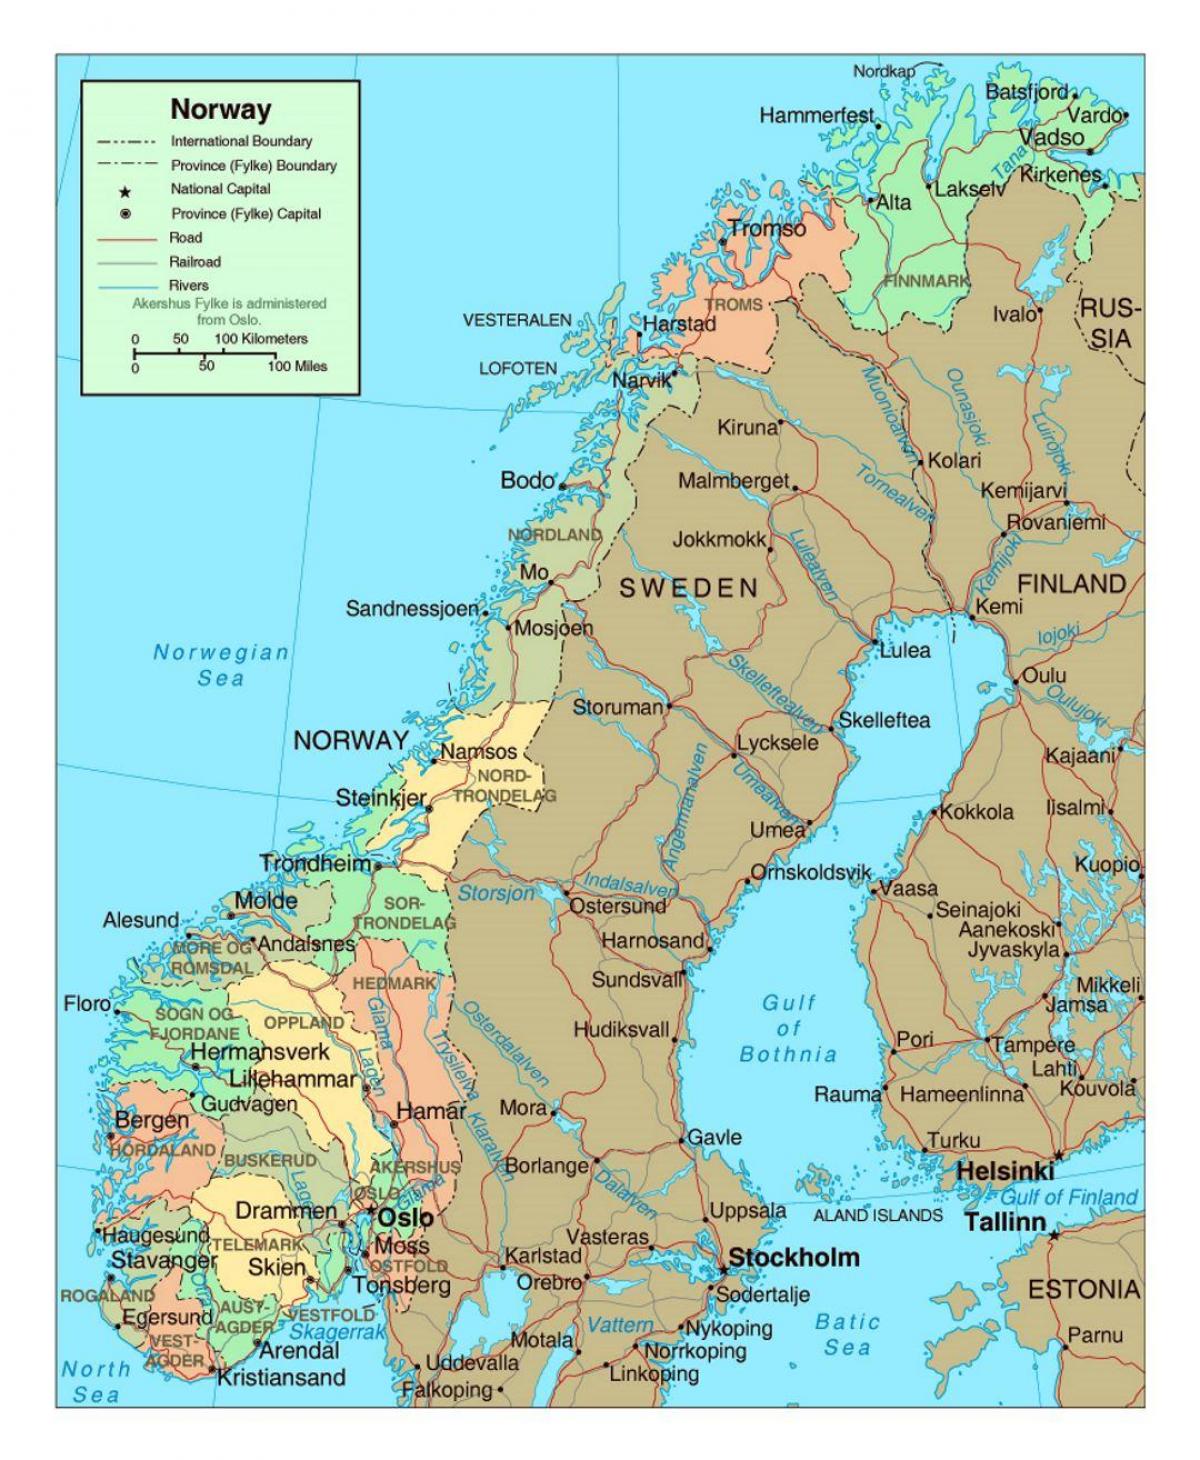 Ճանապարհային քարտեզ Նորվեգիայի քաղաքների հետ